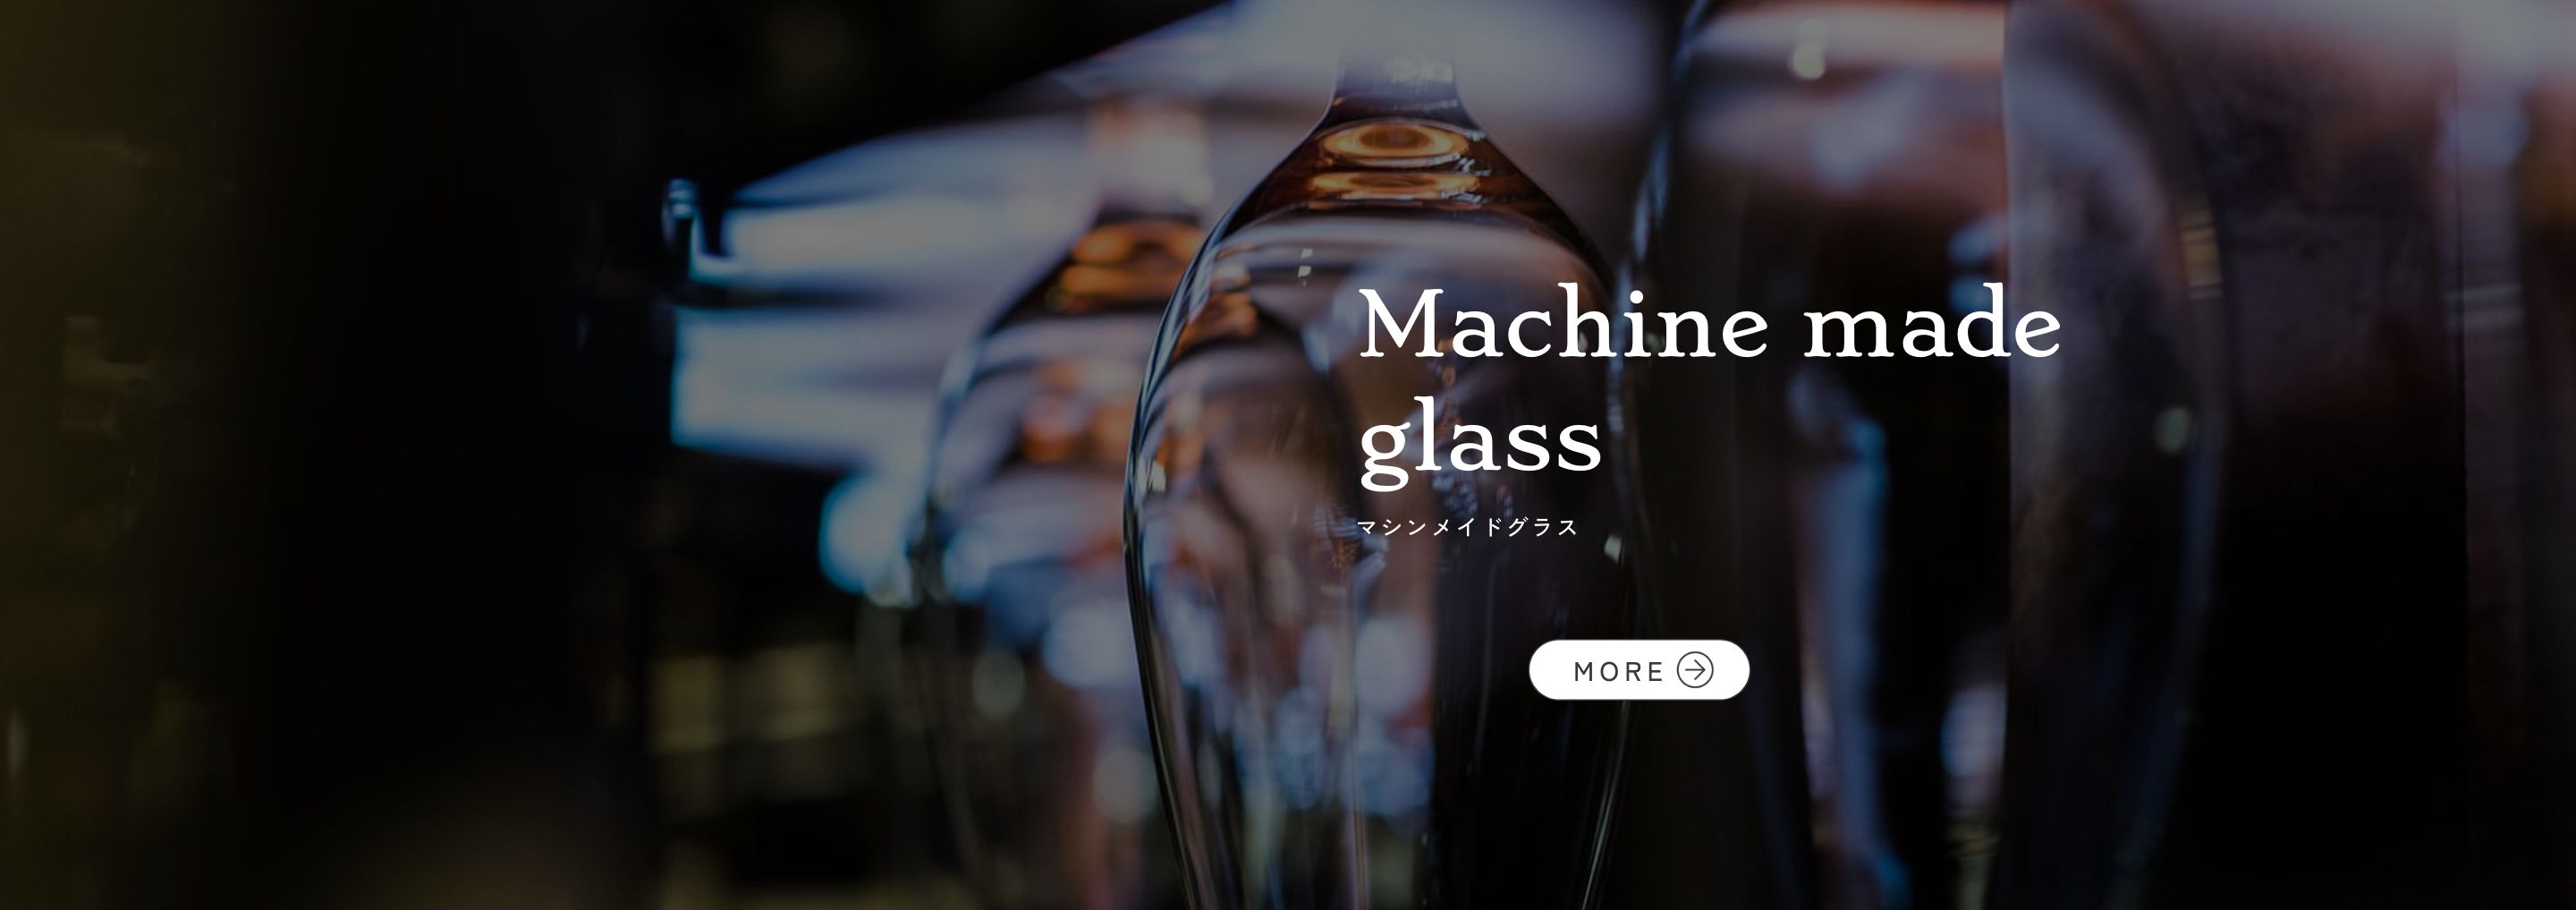 Machine made glass